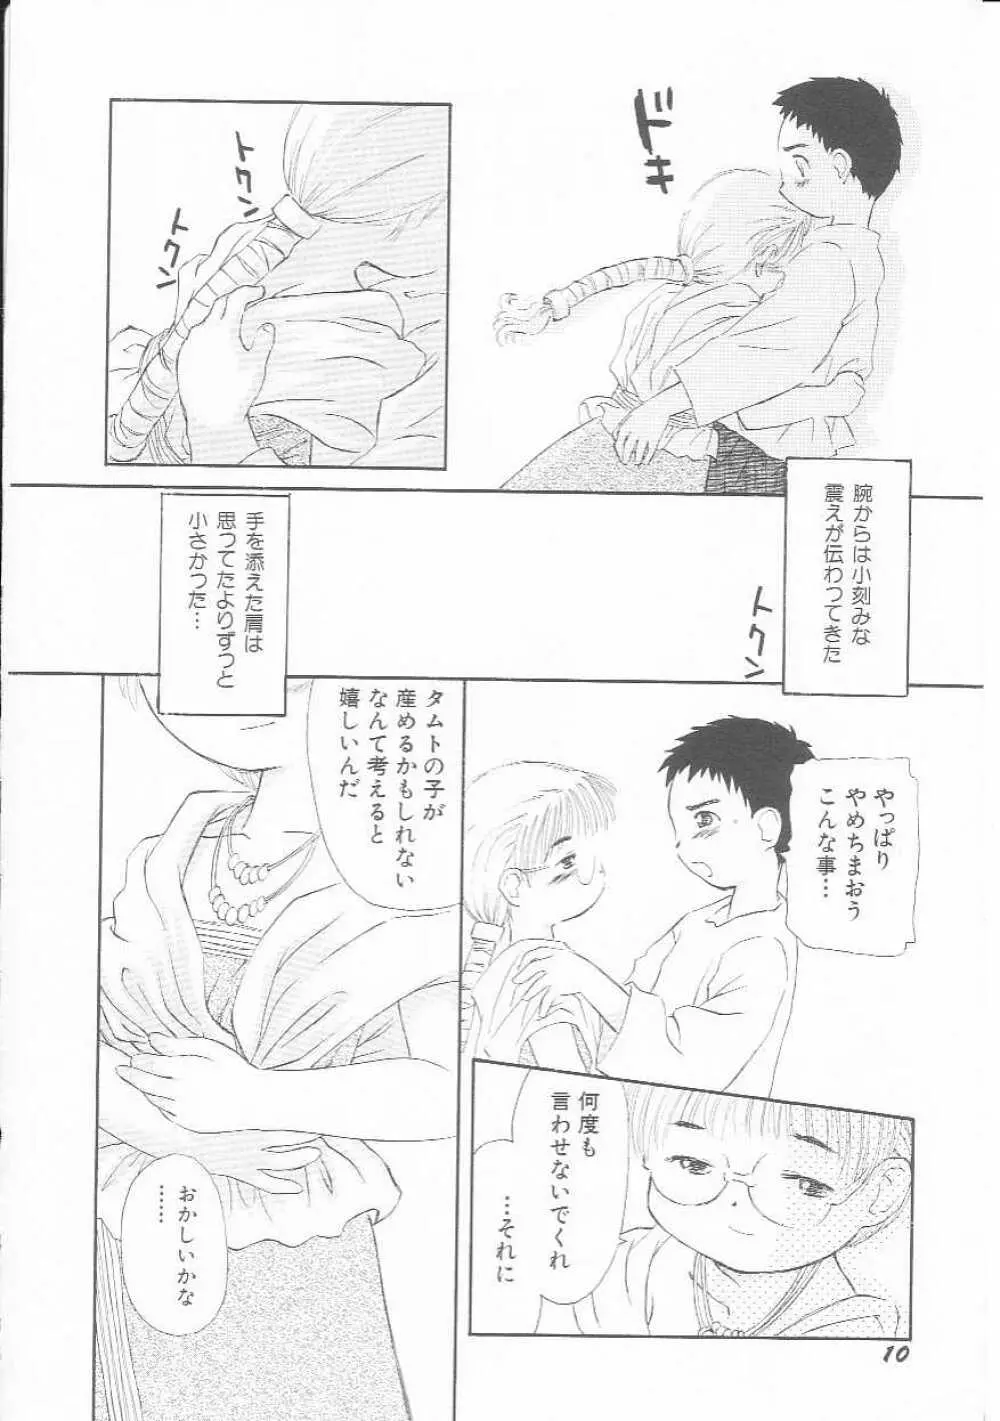 Hin-nyu v01 – Hin-nyu Kurabu.rar 11ページ